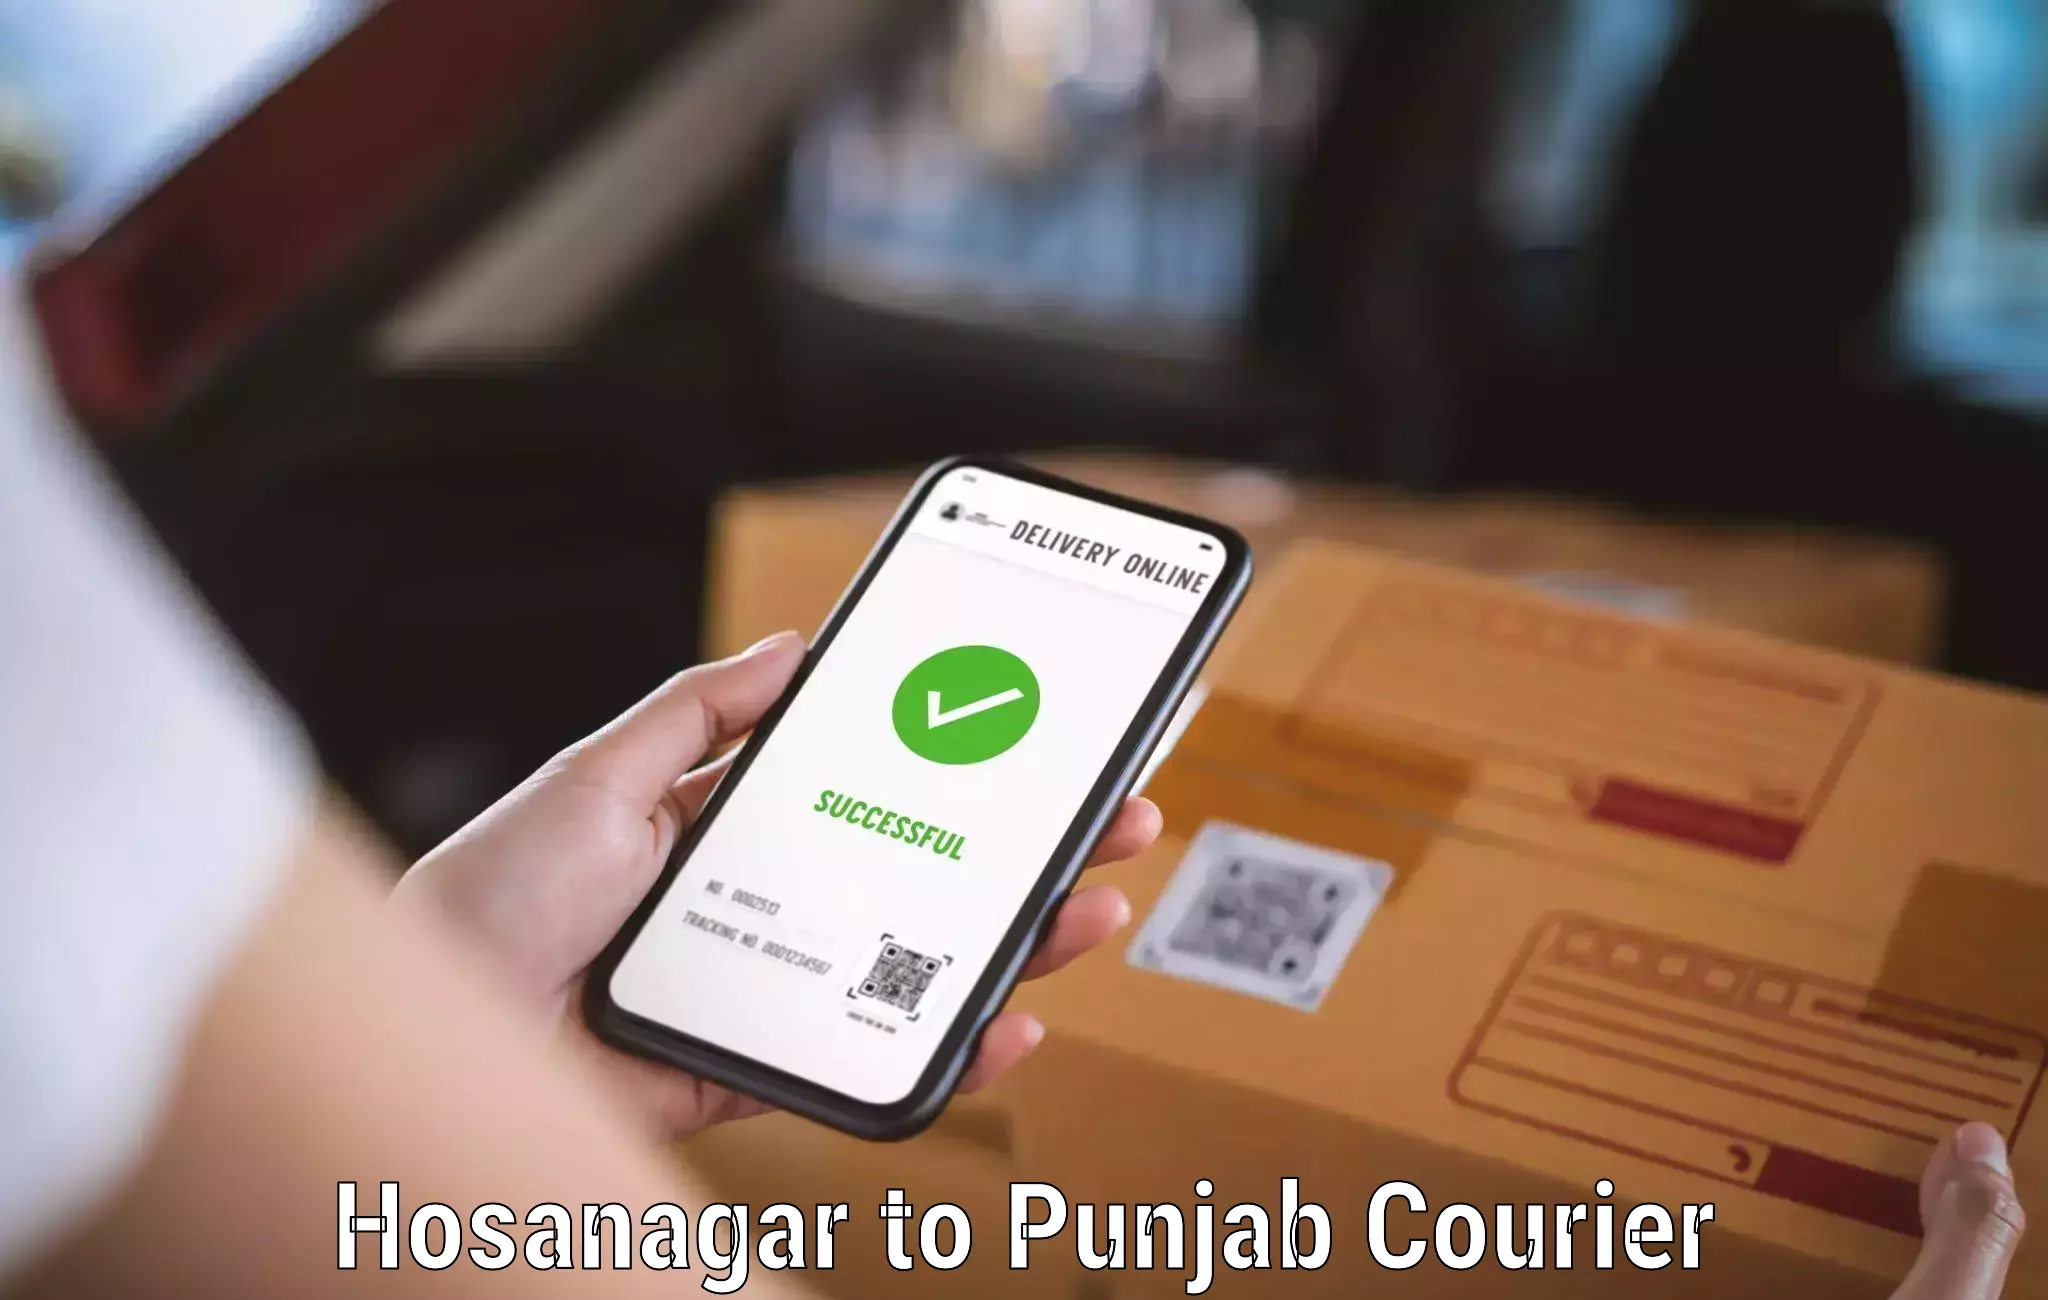 Courier service partnerships Hosanagar to Sirhind Fatehgarh